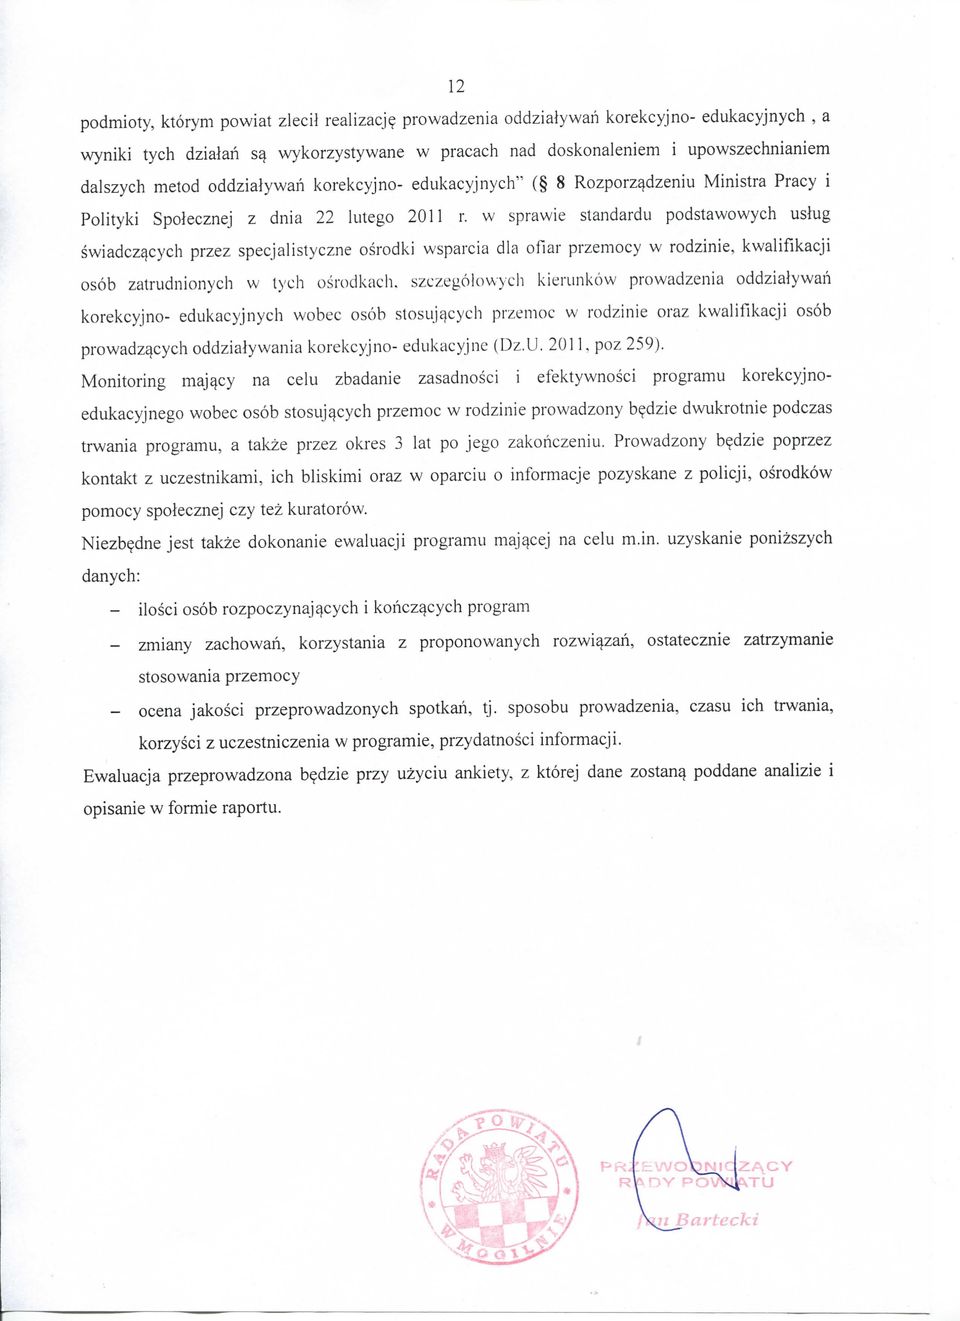 Rozporz^dzeniu Ministra Pracy i Polityki Spolecznej z dnia 22 lutego 2011 r.